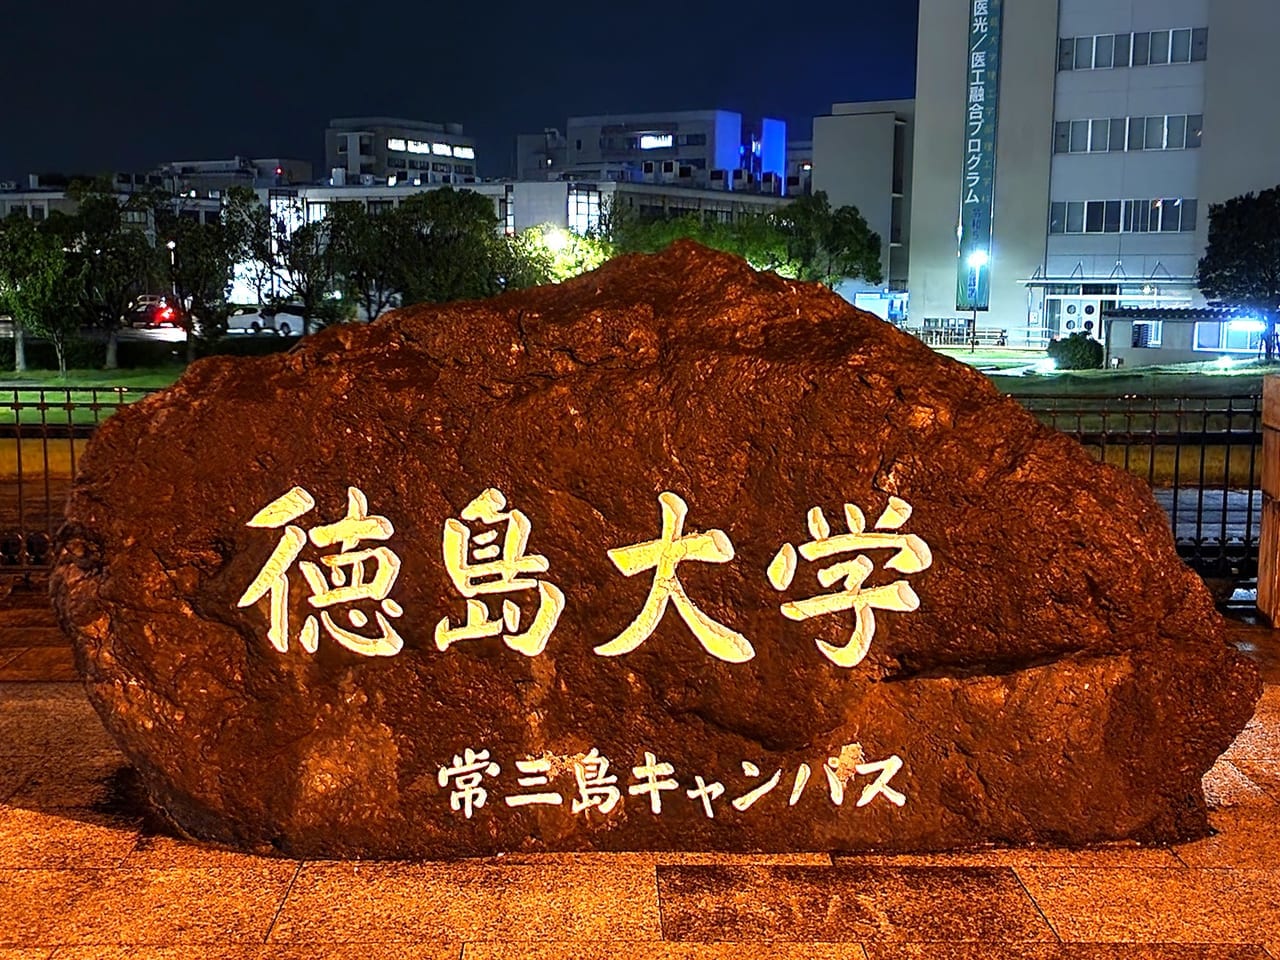 「徳島大学 常三島キャンパス」の石碑